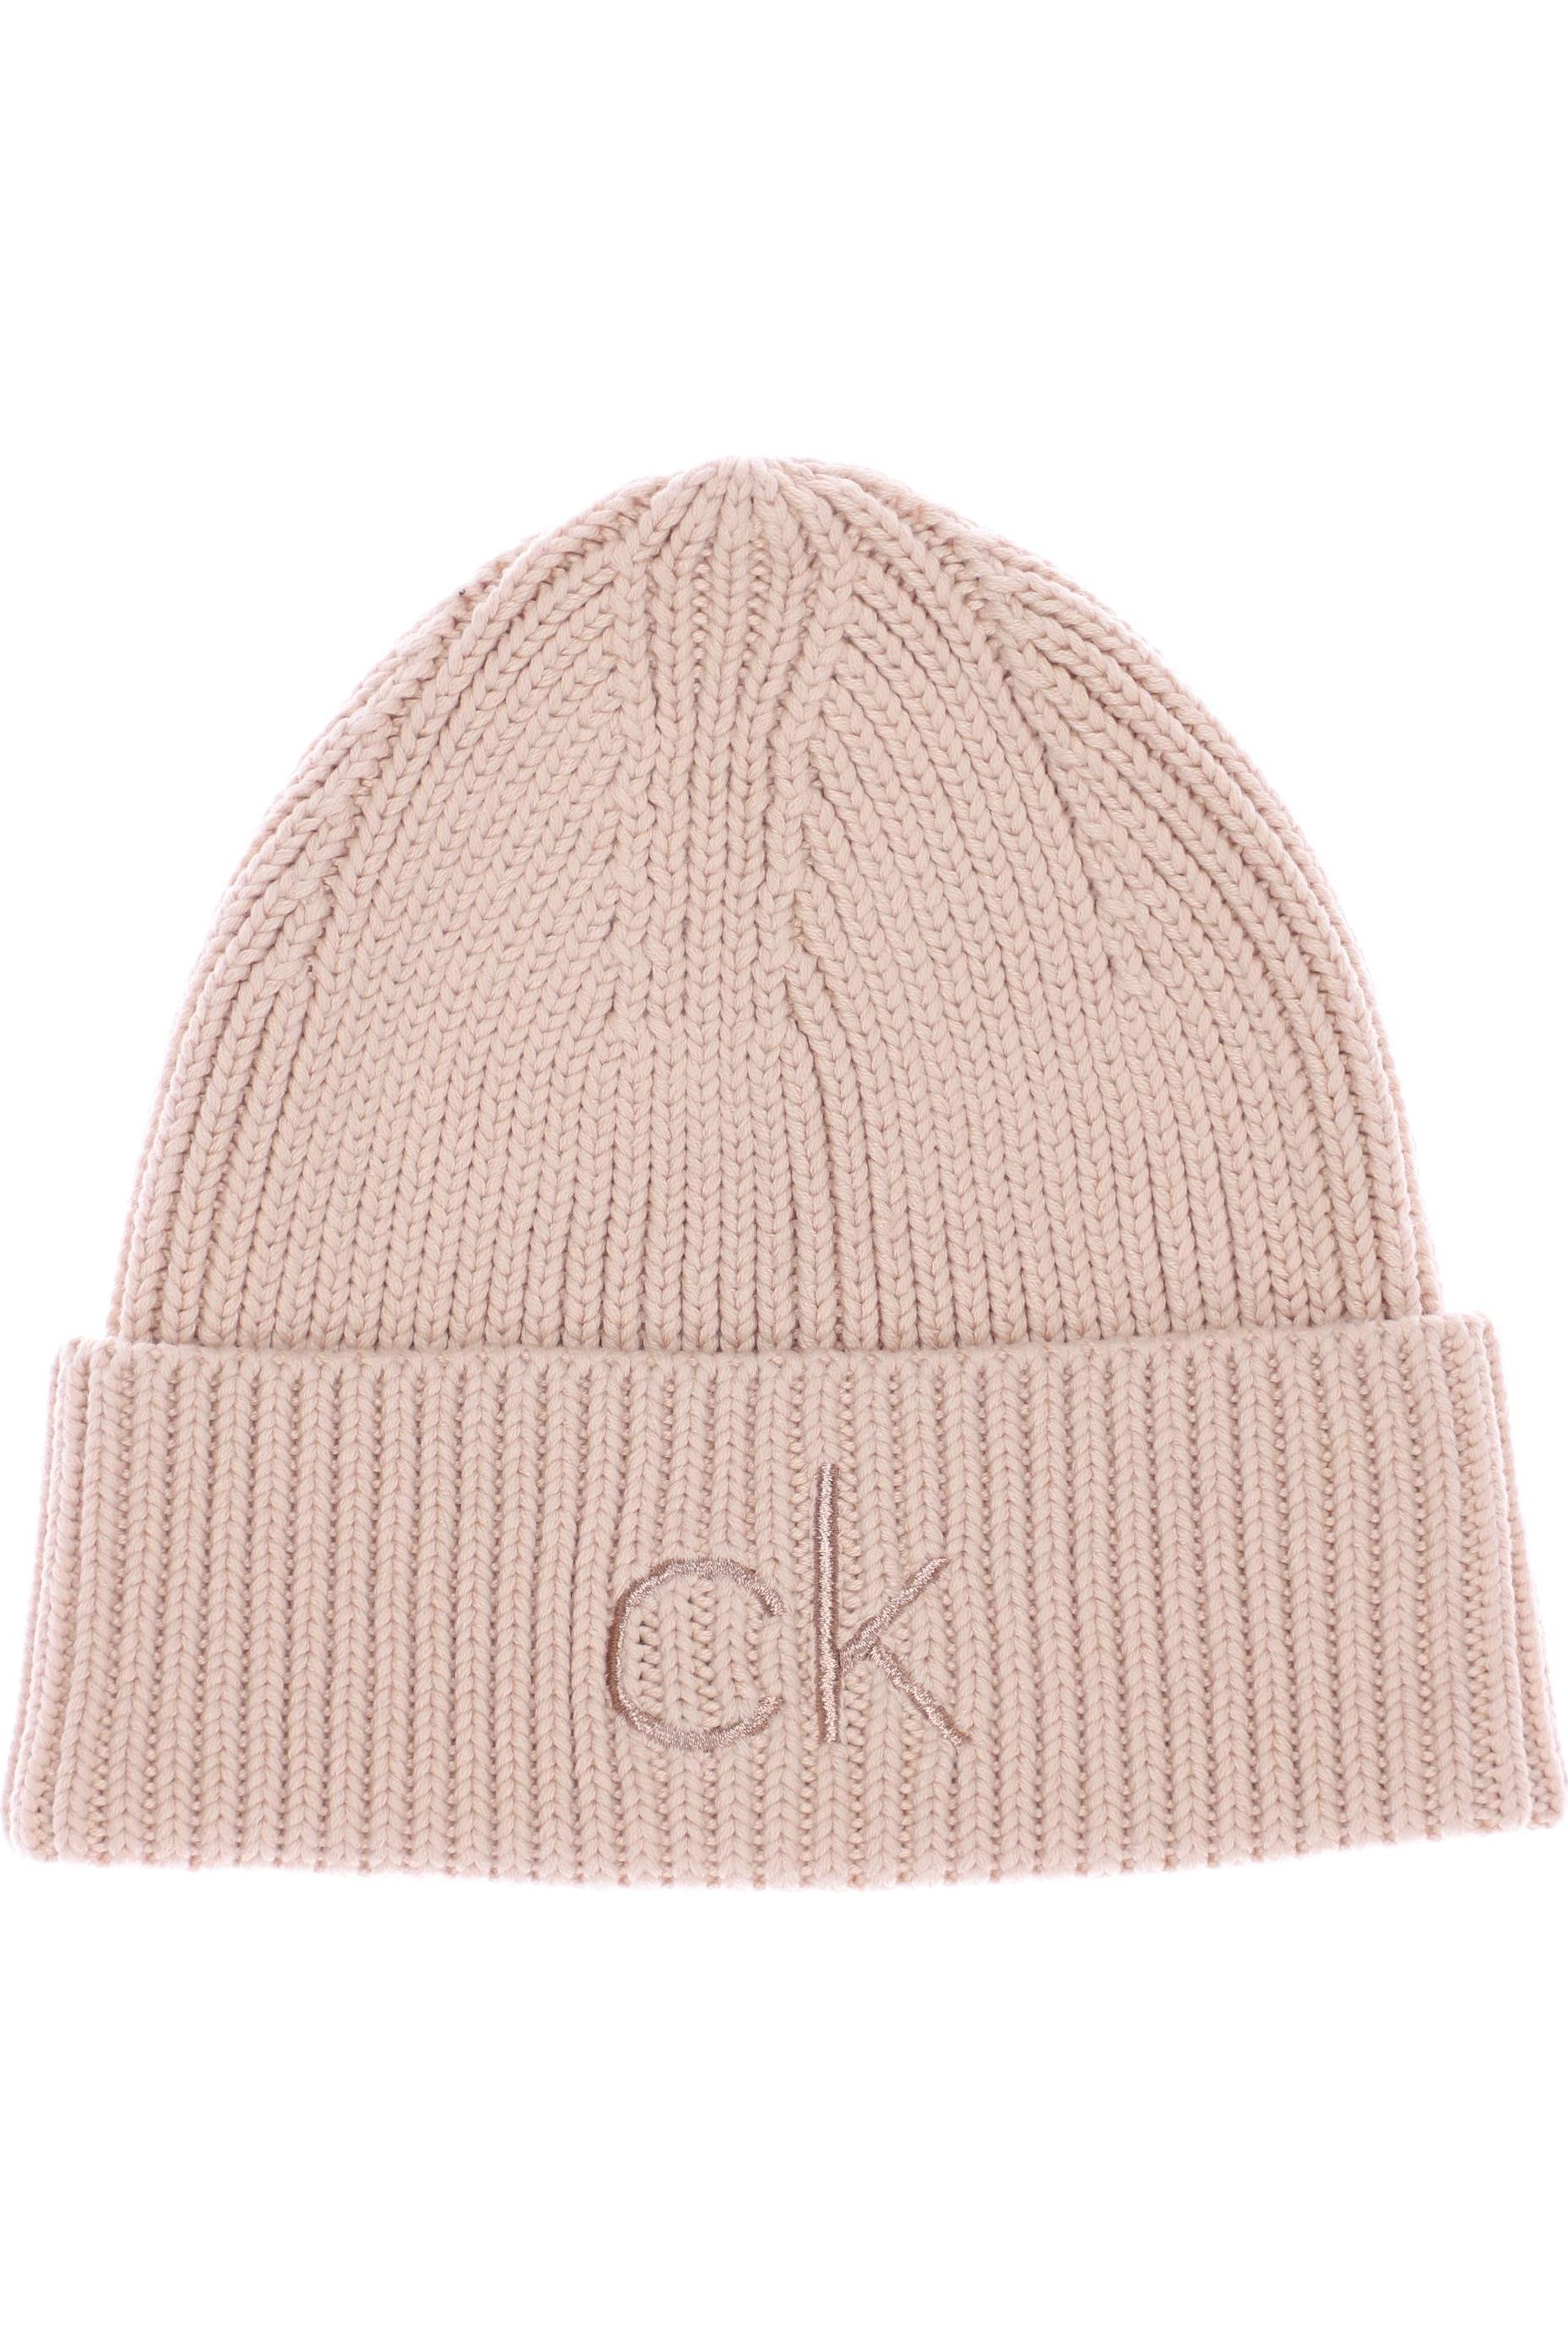 Calvin Klein Damen Hut/Mütze, beige, Gr. uni von Calvin Klein